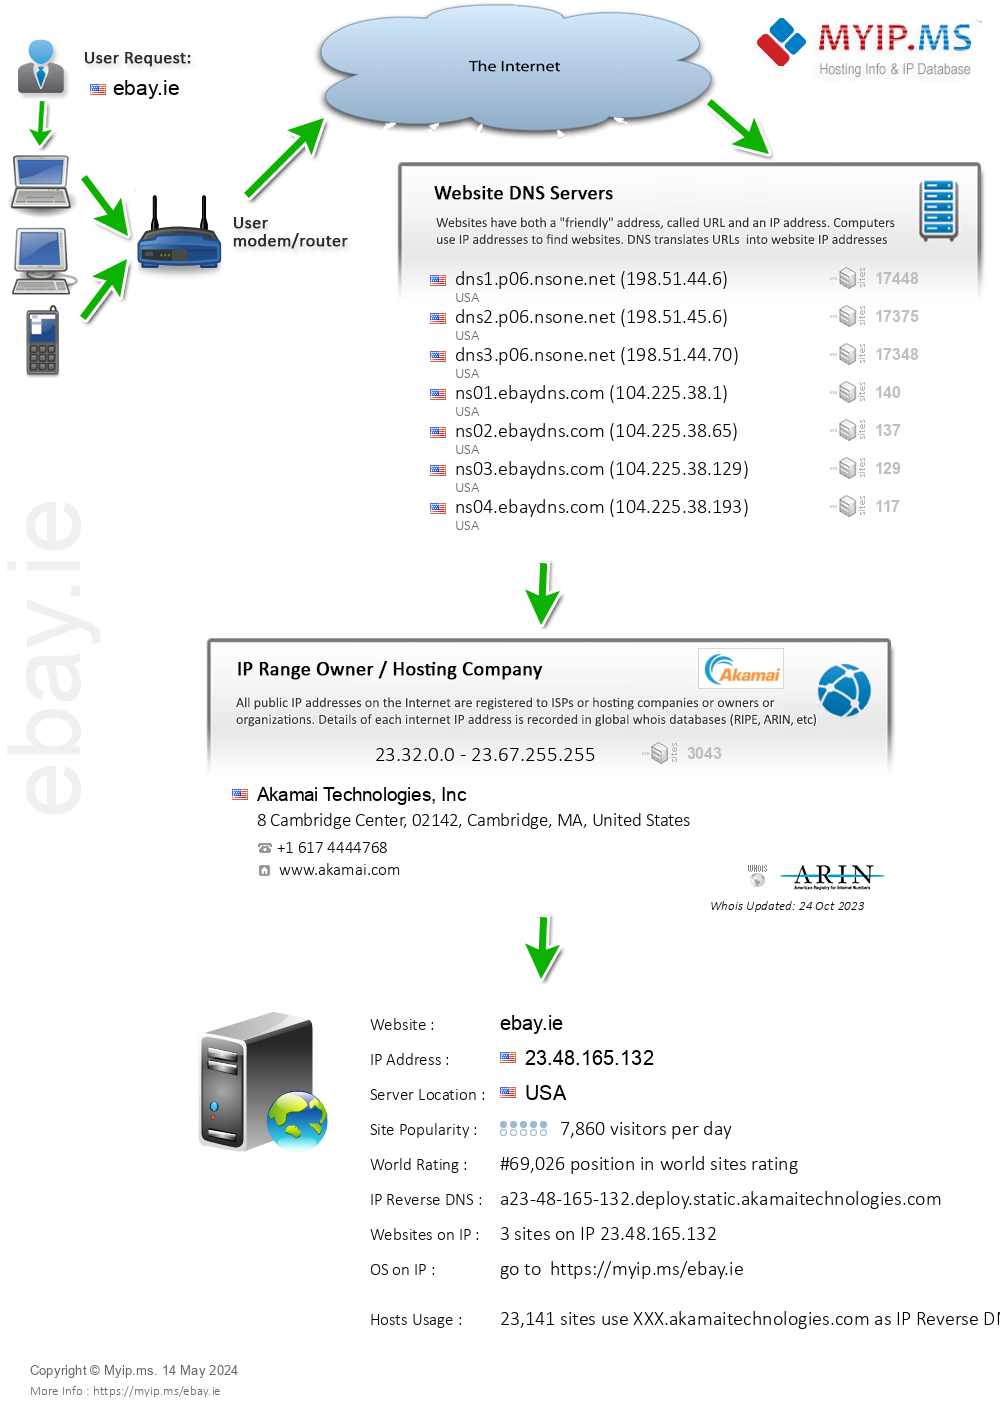 Ebay.ie - Website Hosting Visual IP Diagram